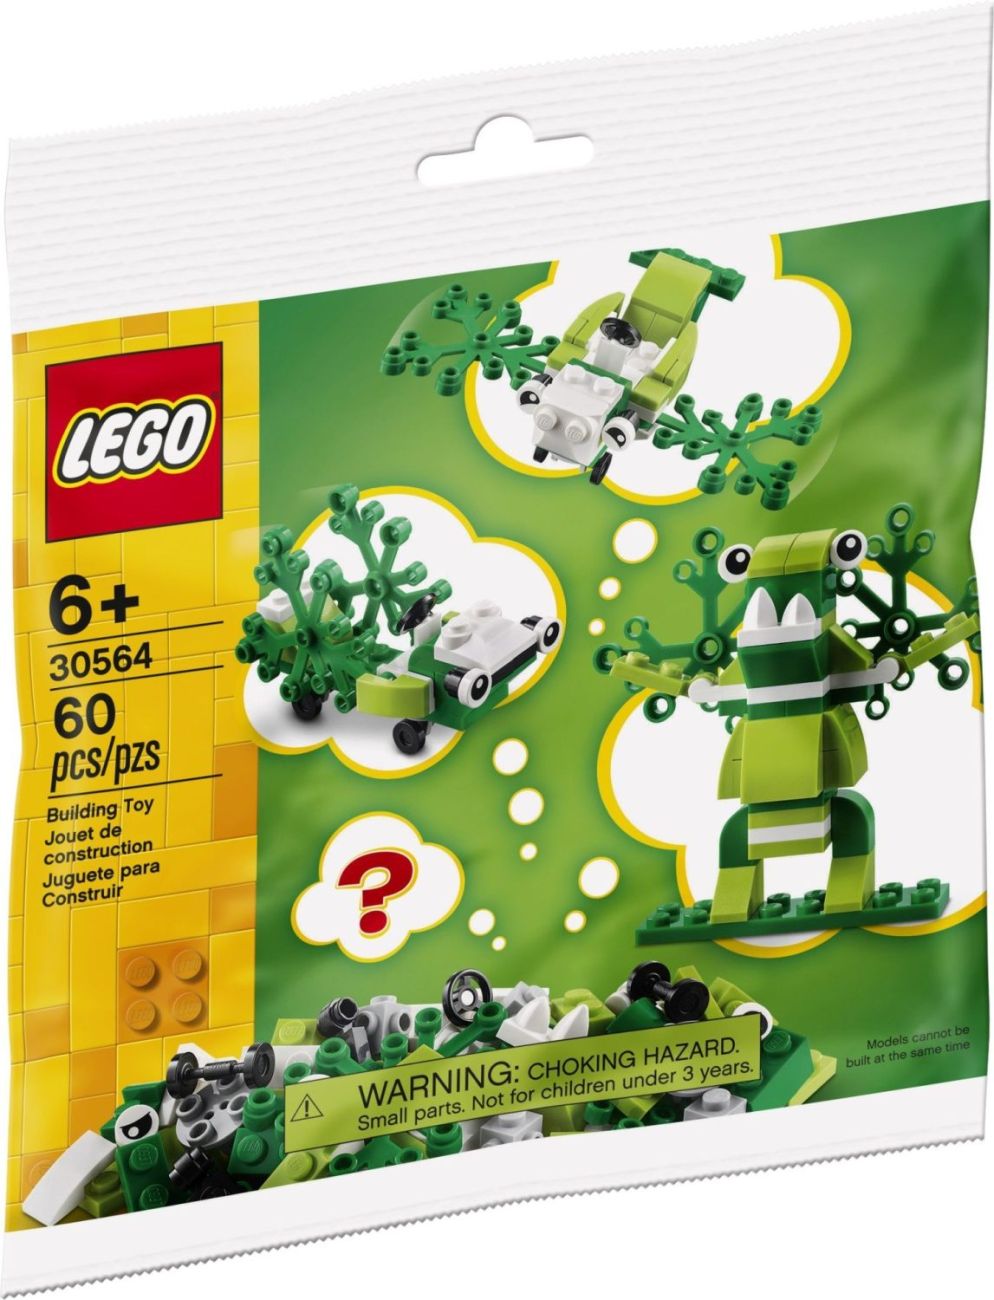 LEGO Polybags: Minions, Raya, Küken und weitere Neuheiten in 2021